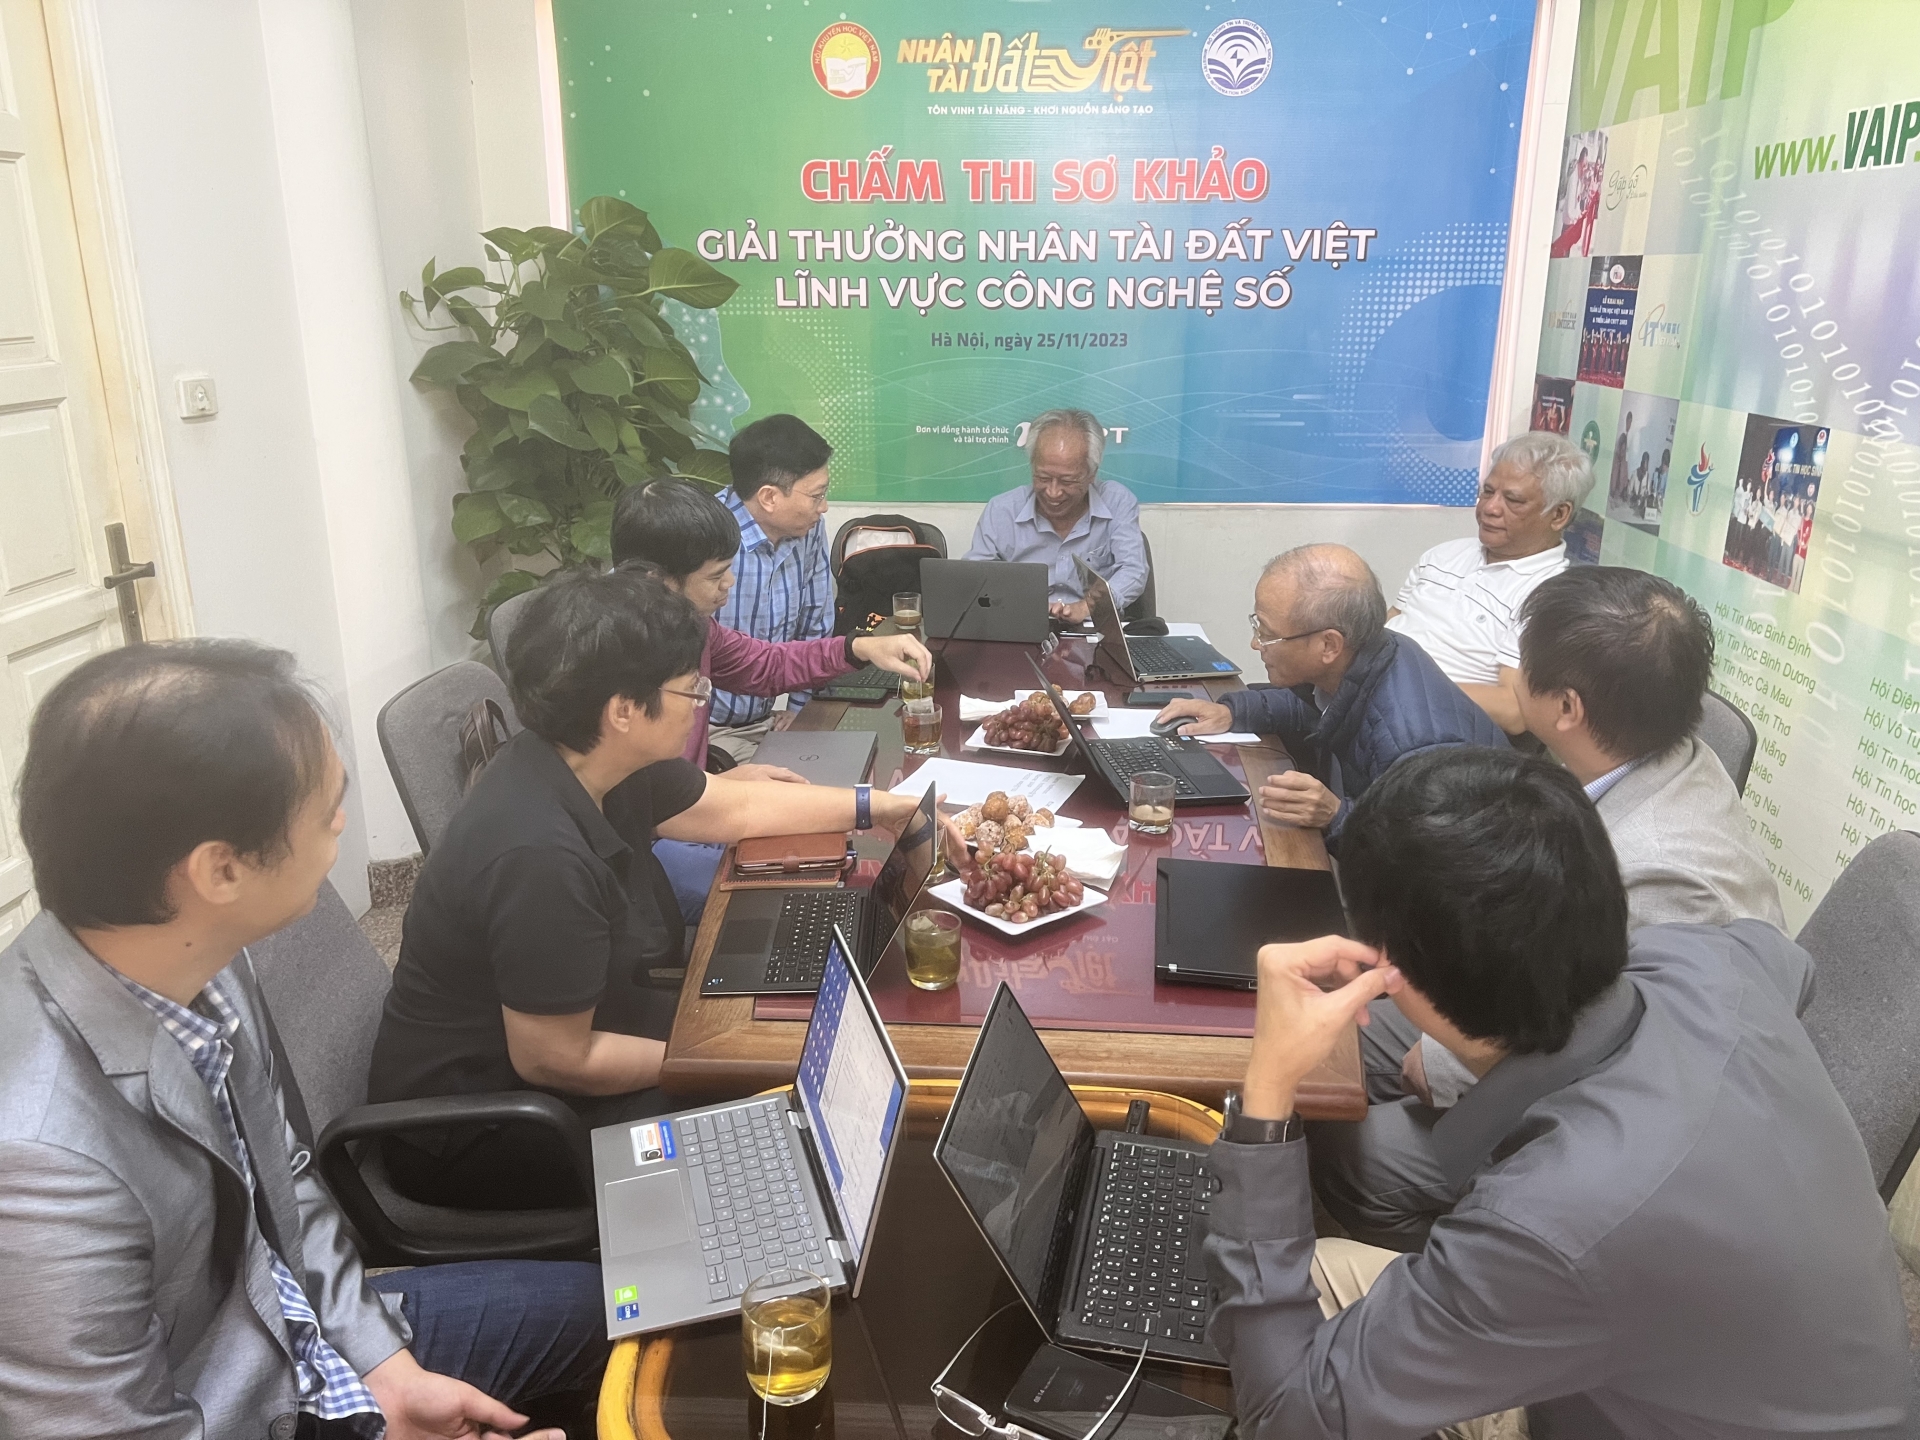 Sản phẩm công nghệ số VNPT khẳng định vị thế trong sân chơi của những Nhân tài đất Việt